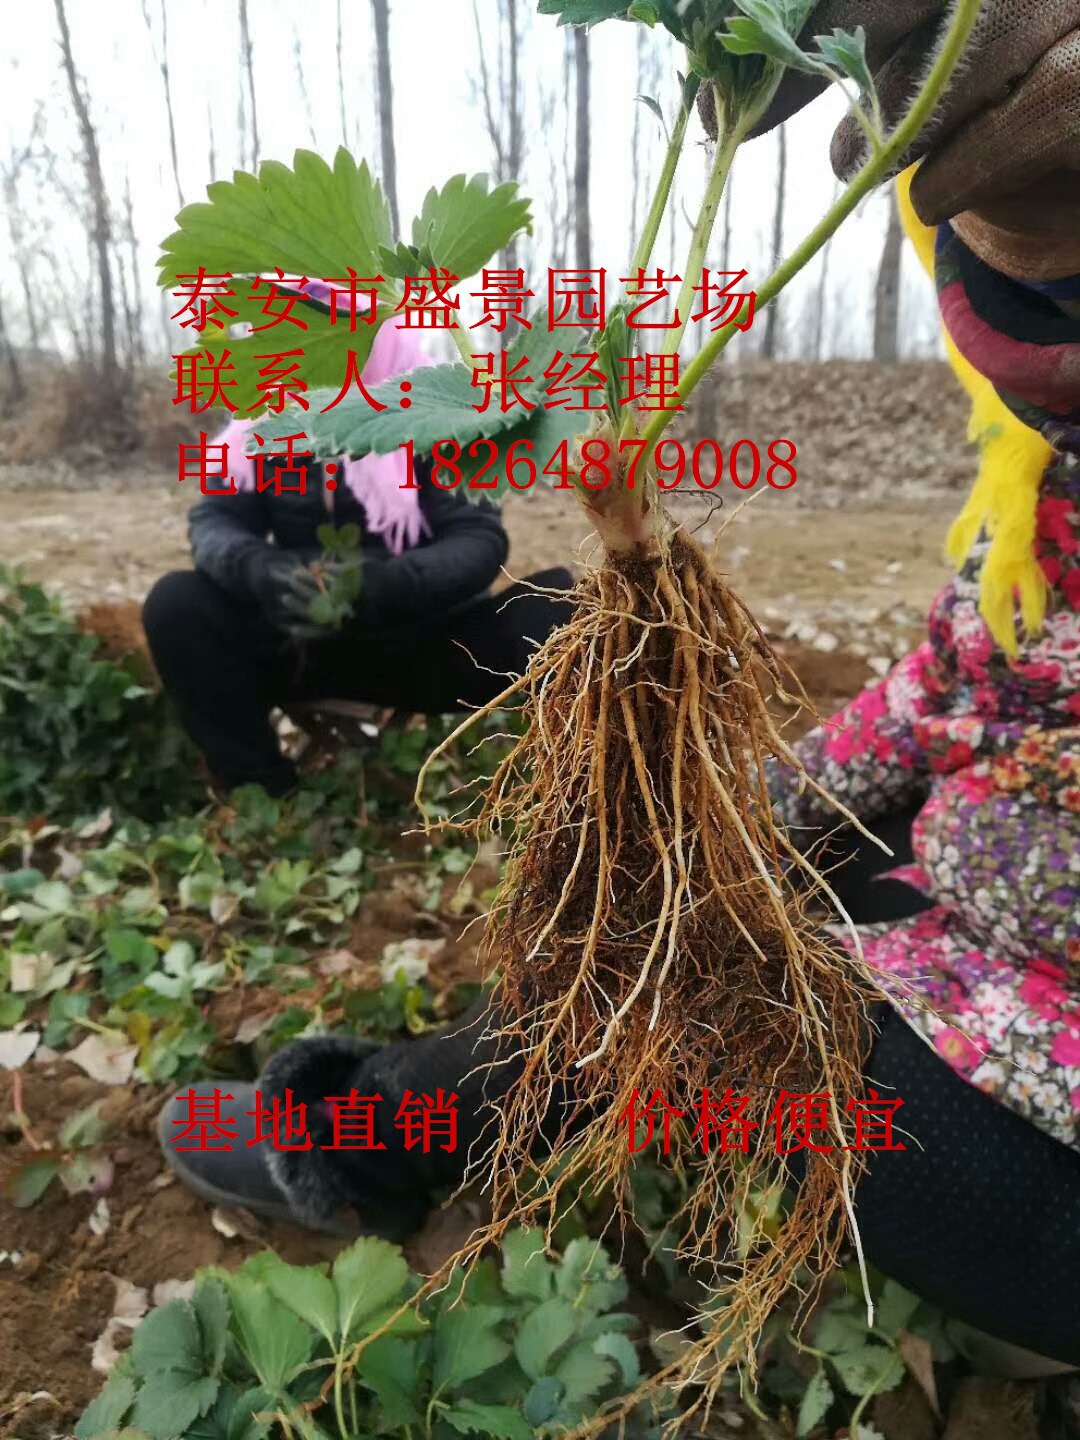 宁波市丰香丰香草莓苗  行情价格